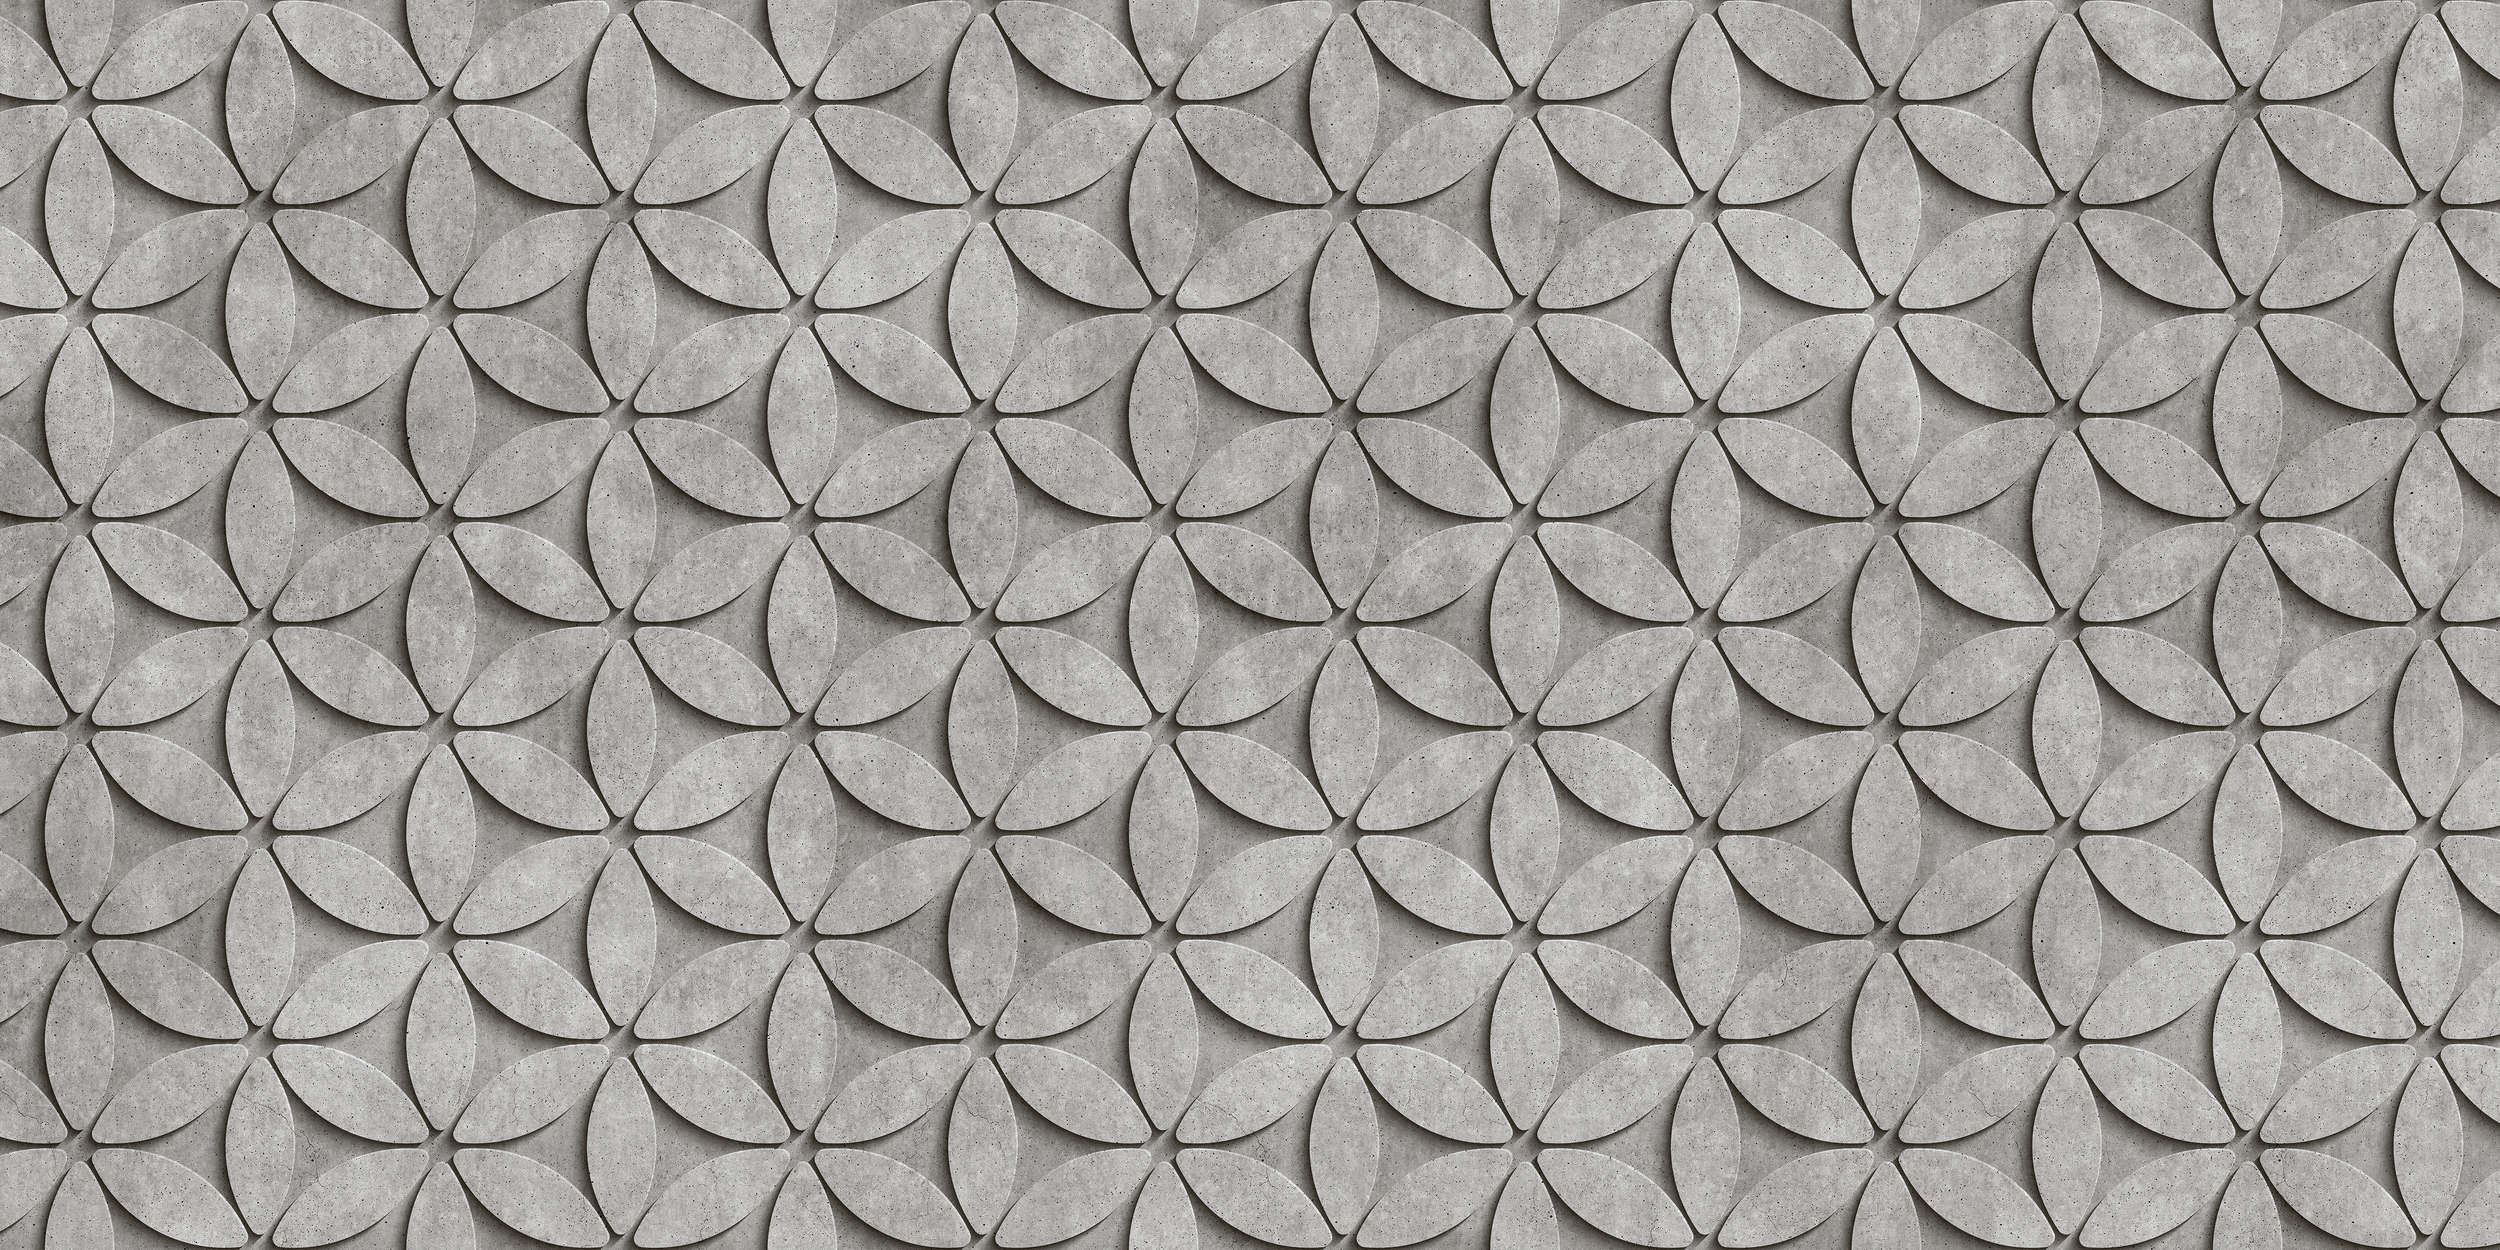             Azulejo 1 - Papel Pintado Polígonos de Hormigón 3D - Gris, Negro | Vellón liso mate
        